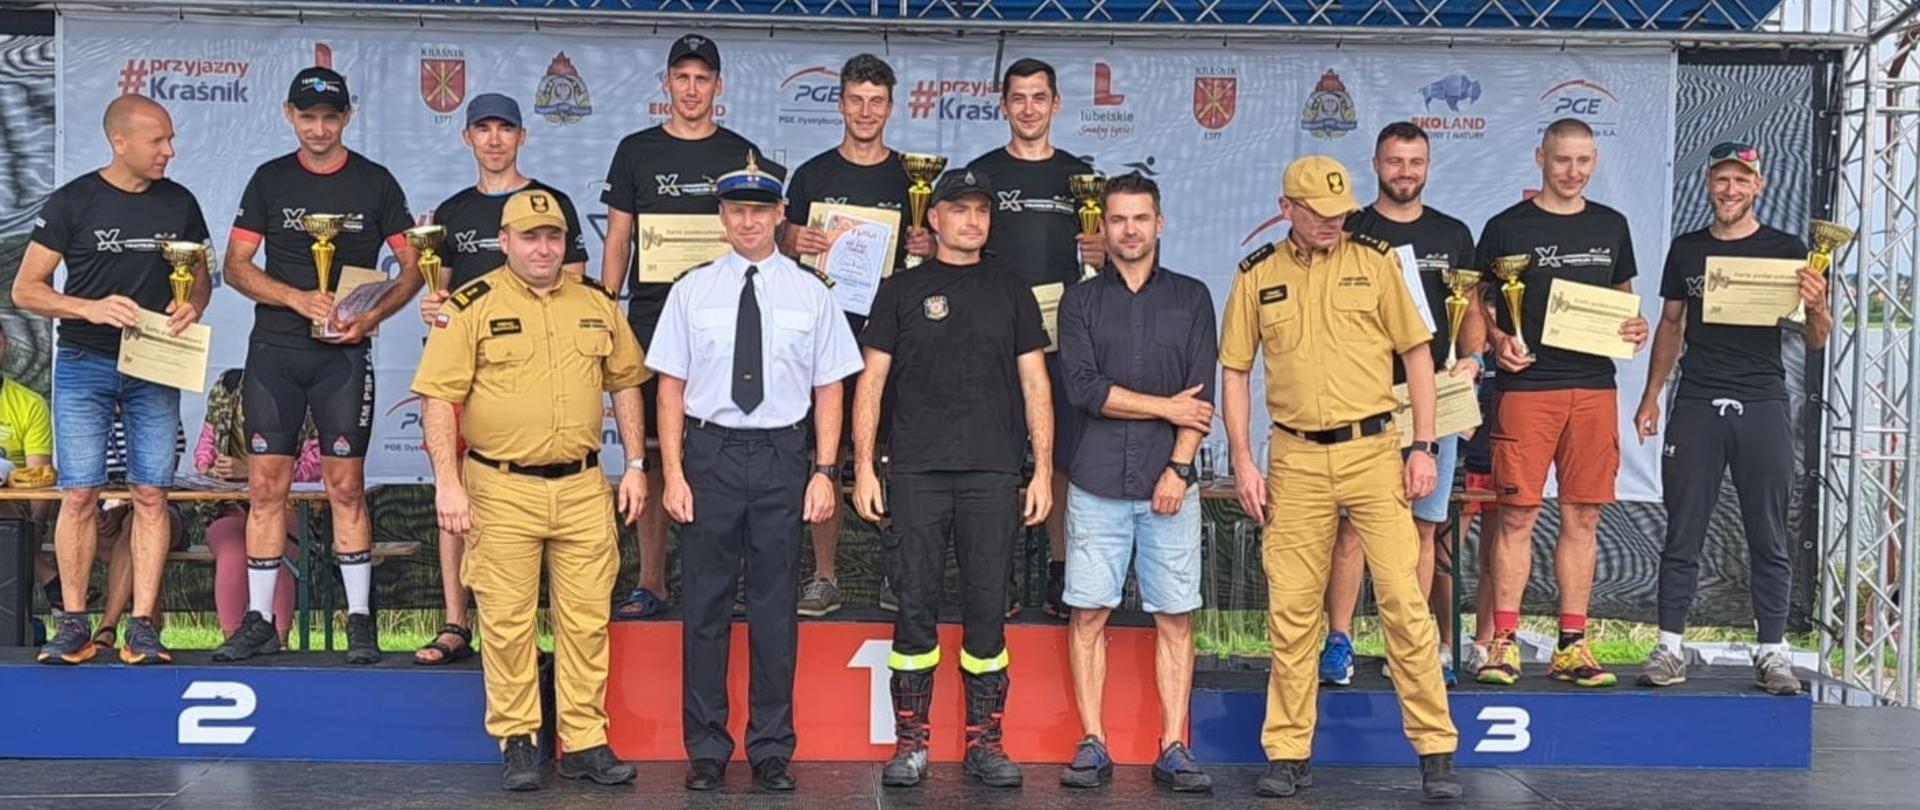 Grupa sportowców oraz strażacy w mundurach służbowych stoją na scenie i podium